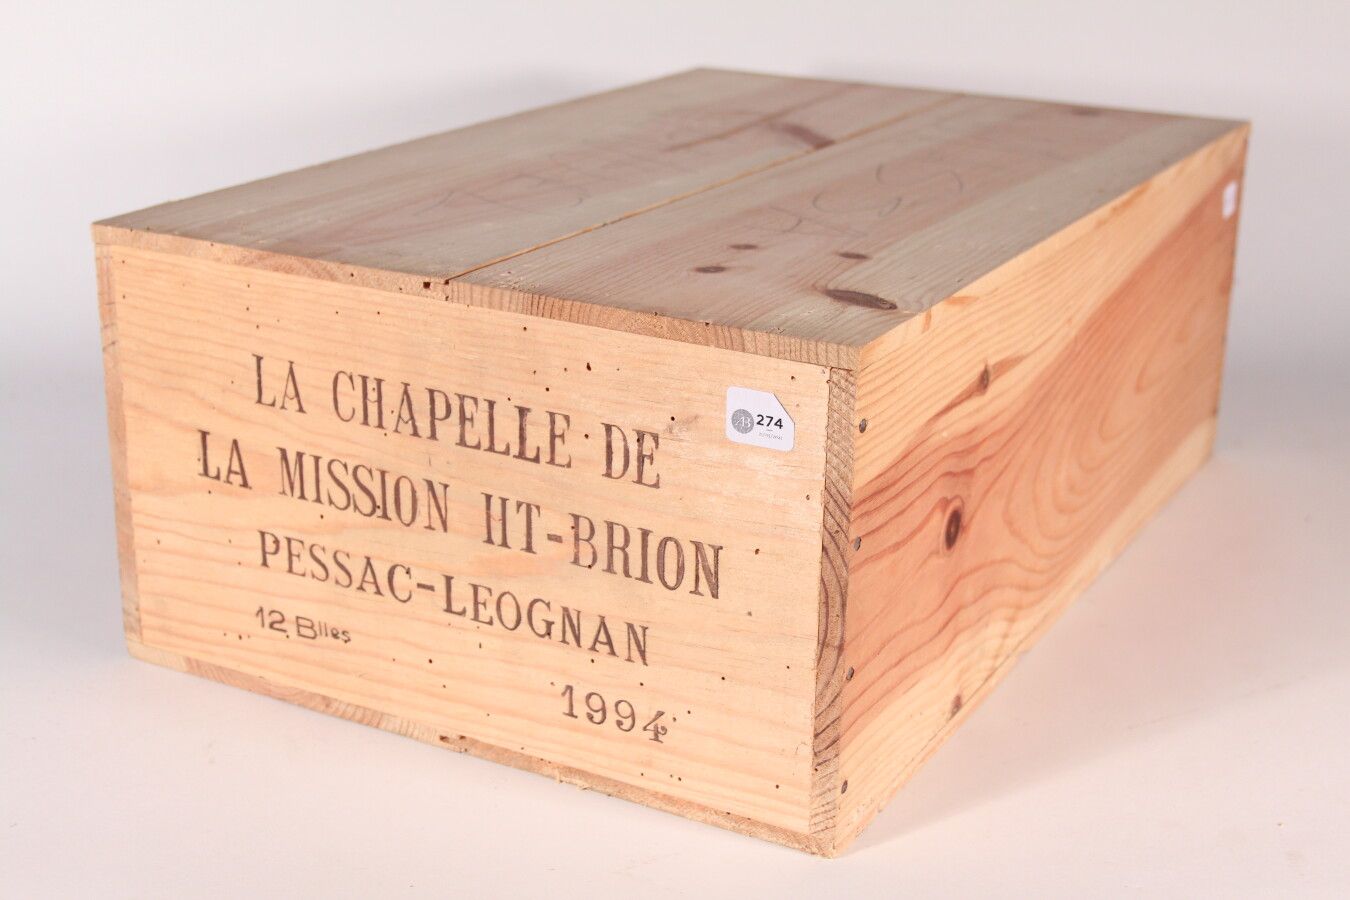 Null 1994 - La Chapelle de la Mission Haut Brion

佩萨克-雷奥良红葡萄酒 - 12瓶